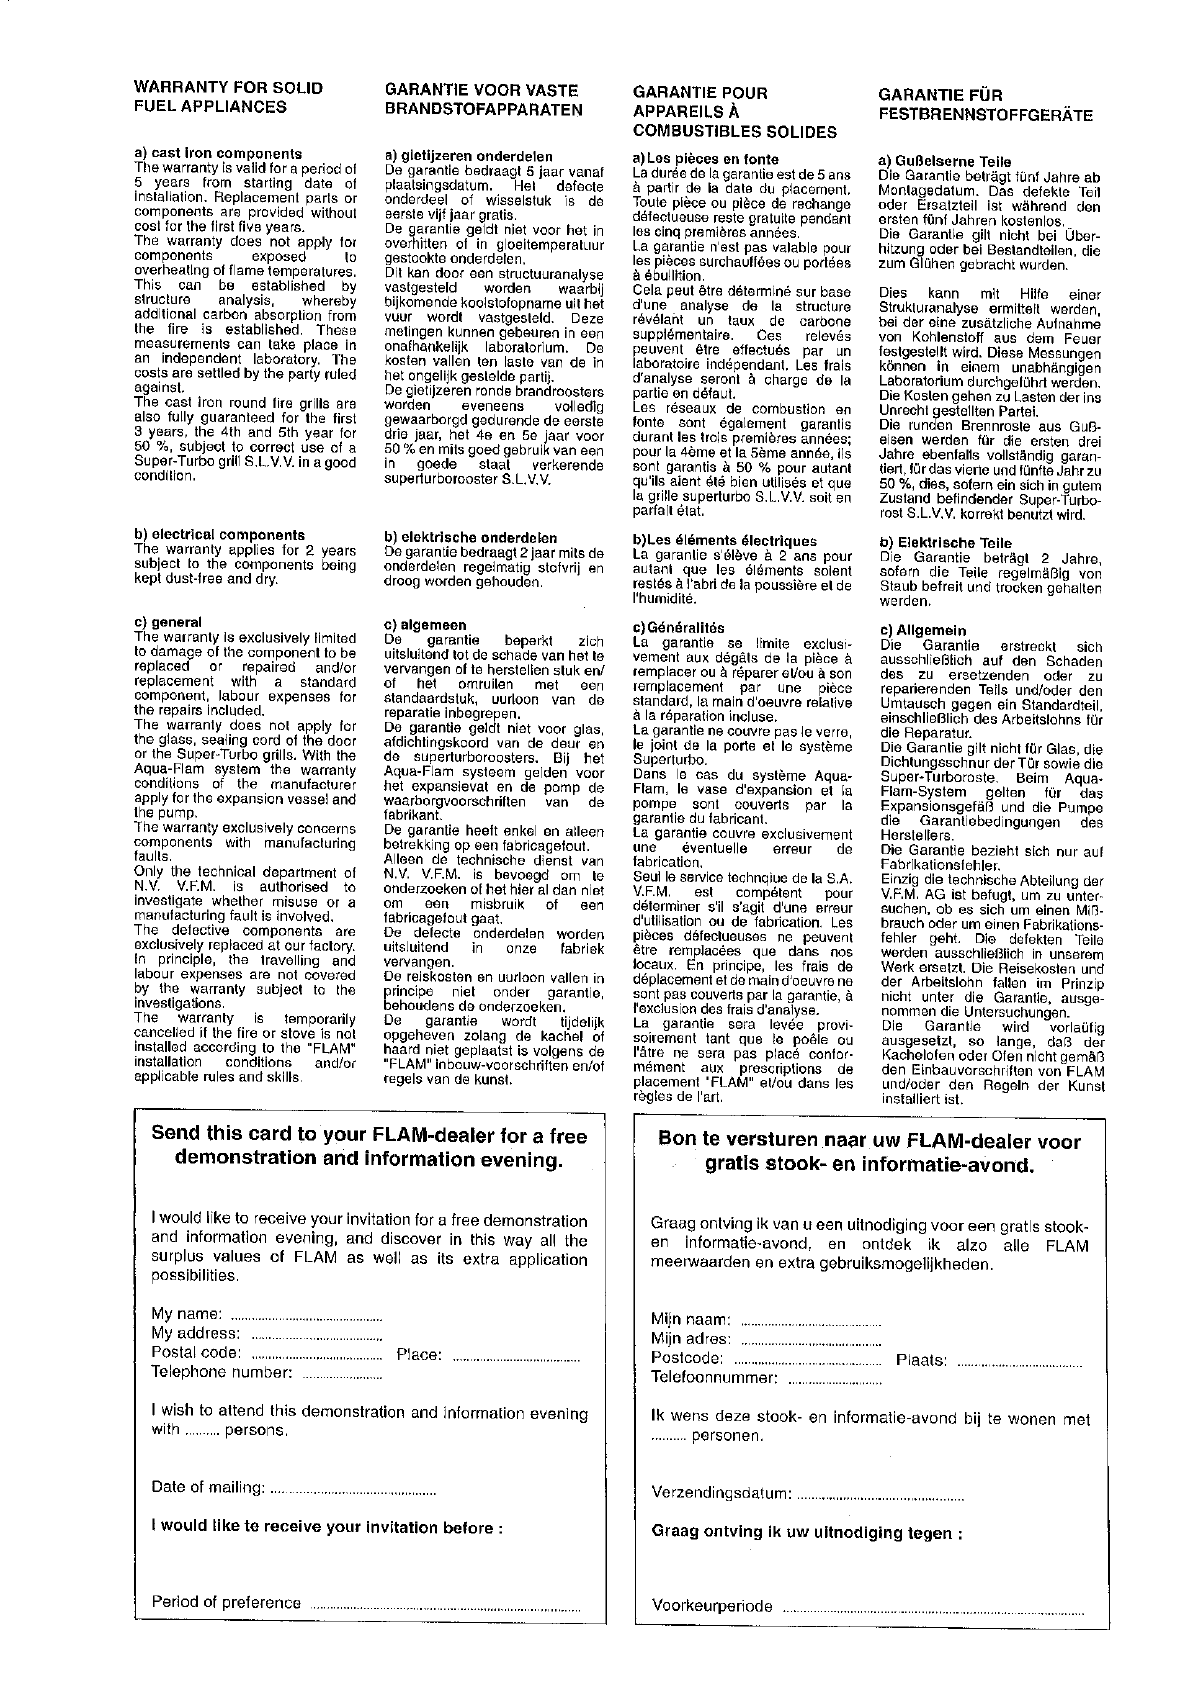 Observatie Onmogelijk rukken Handleiding Flam MT serie (pagina 25 van 48) (Nederlands, Duits, Frans)